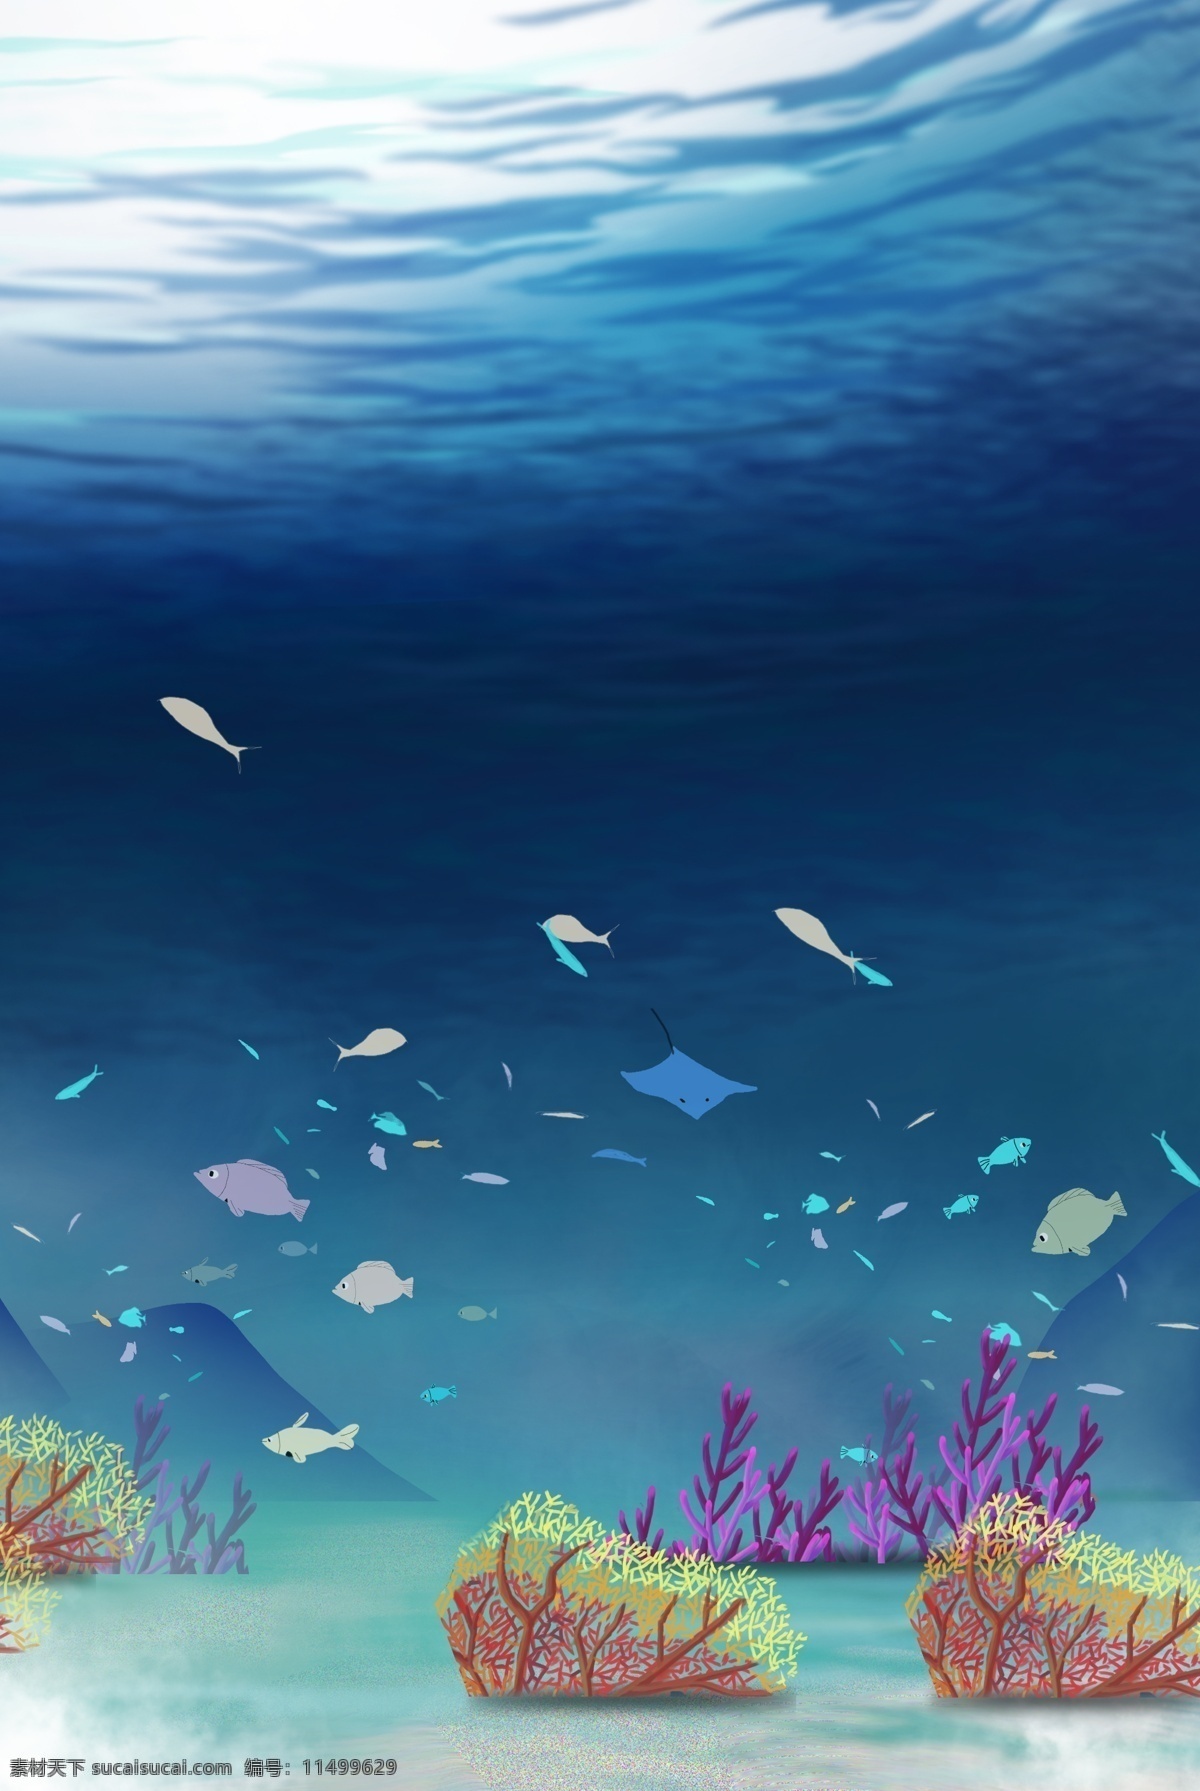 海洋世界 蓝色 珊瑚 分层 banner 卡通 夏天 海底 鱼 气泡 创意合成